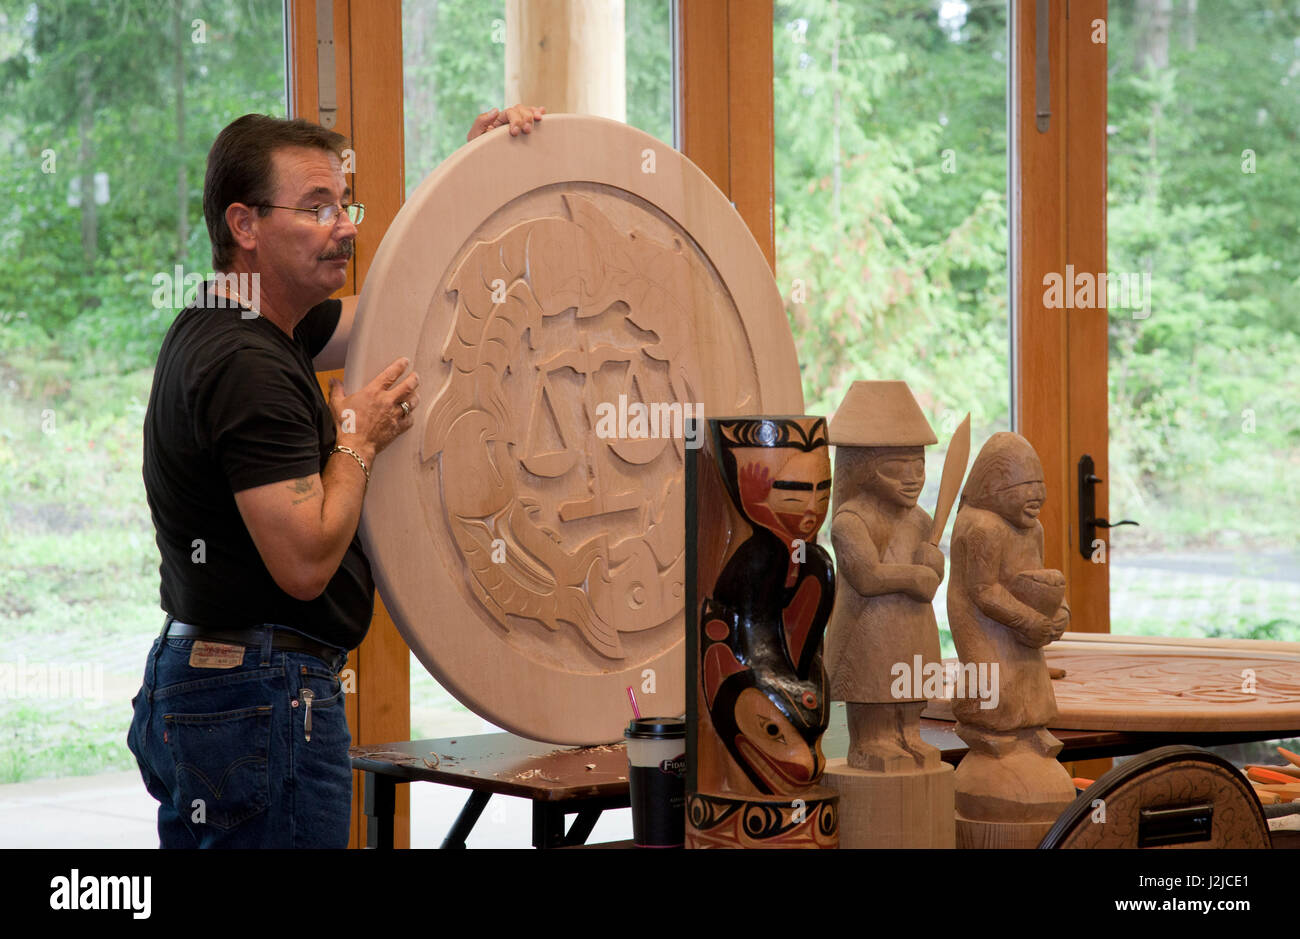 Sculpteur sur bois traditionnelles des Salish de la côte de l'affiche son savoir-faire au cours d'un atelier culturel le Hilbub Centre Culturel et Musée situé sur les Tribus Tulalip Reservation à Marysville, WA Banque D'Images